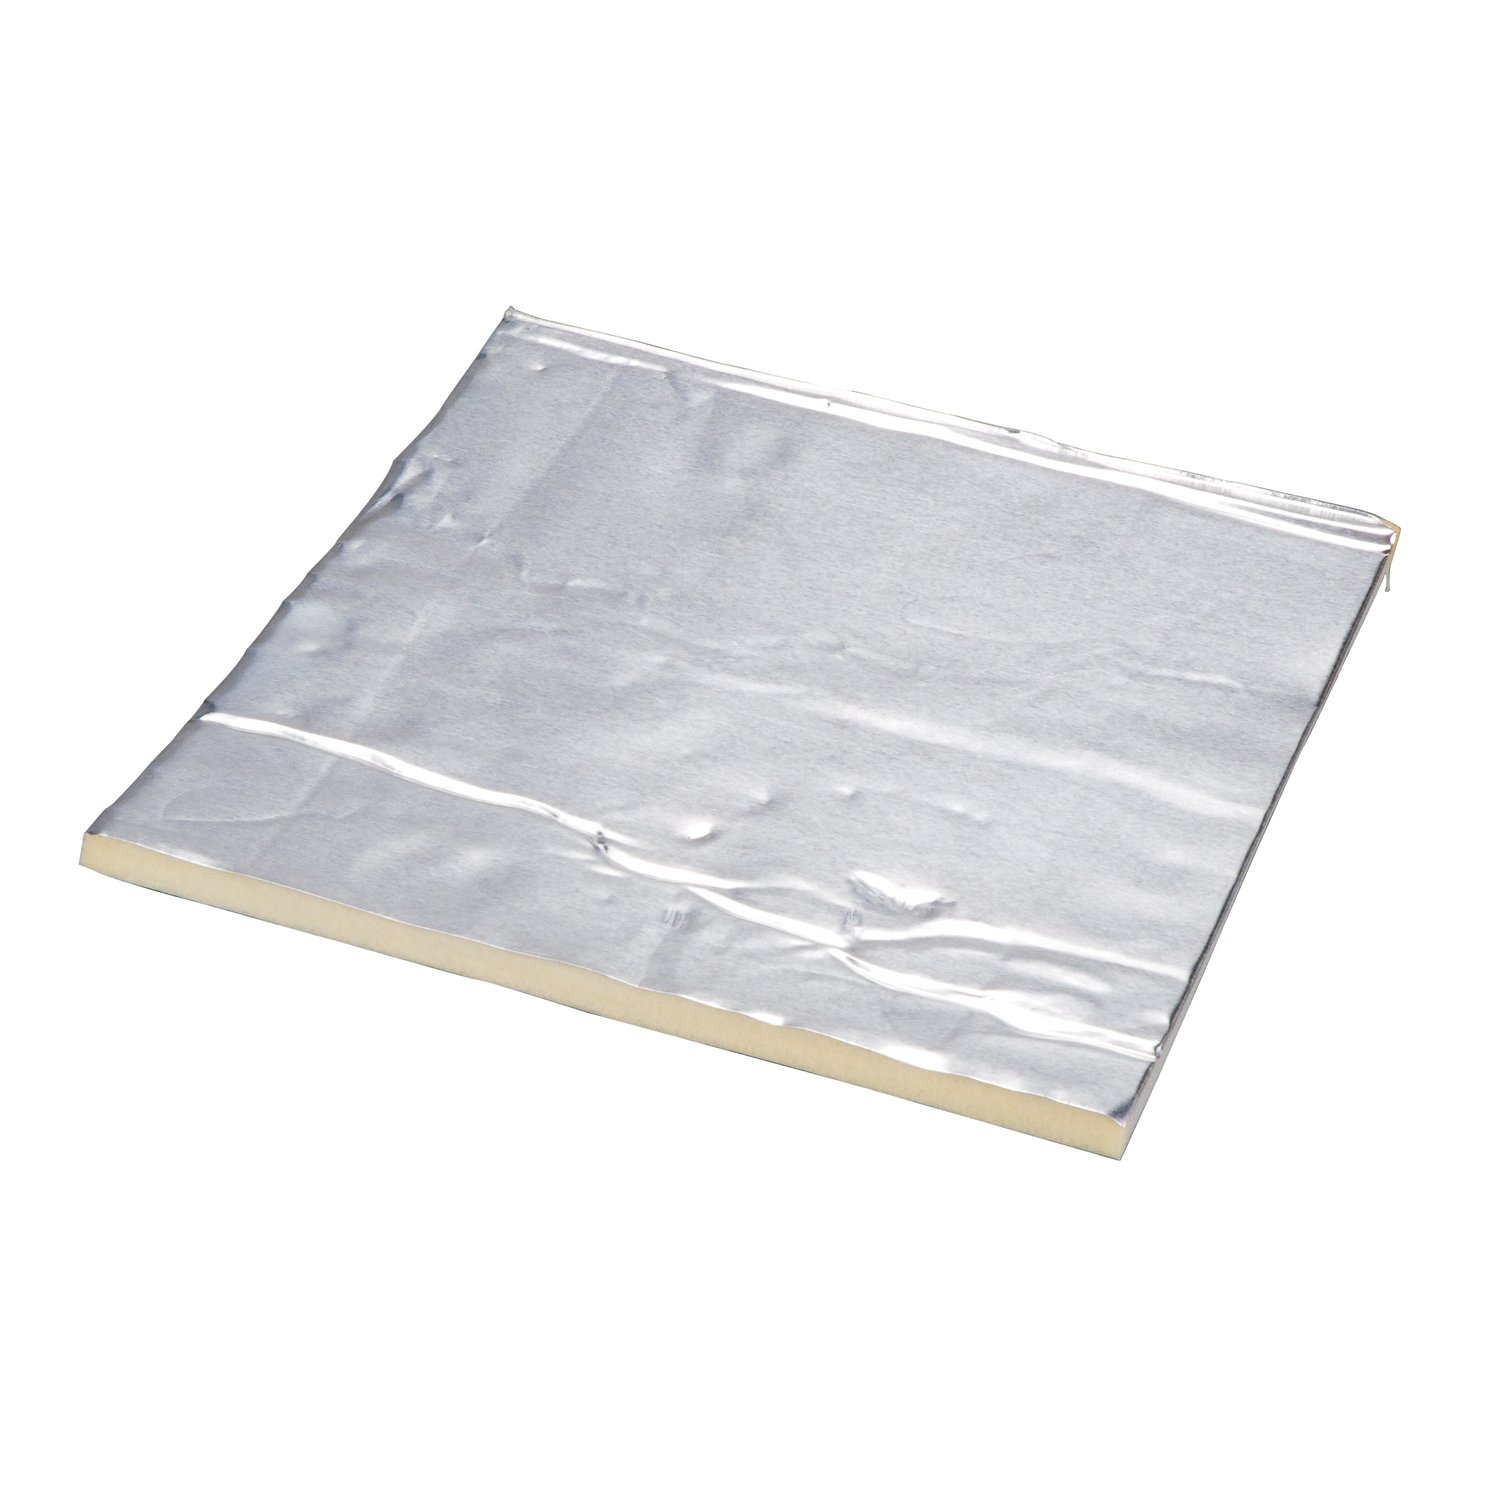 7010338369 - 3M Damping Aluminum Foam Sheets 4014, Silver, 6 in x 48 in, 250 mil, 1
pack per case (50 sheets per case)